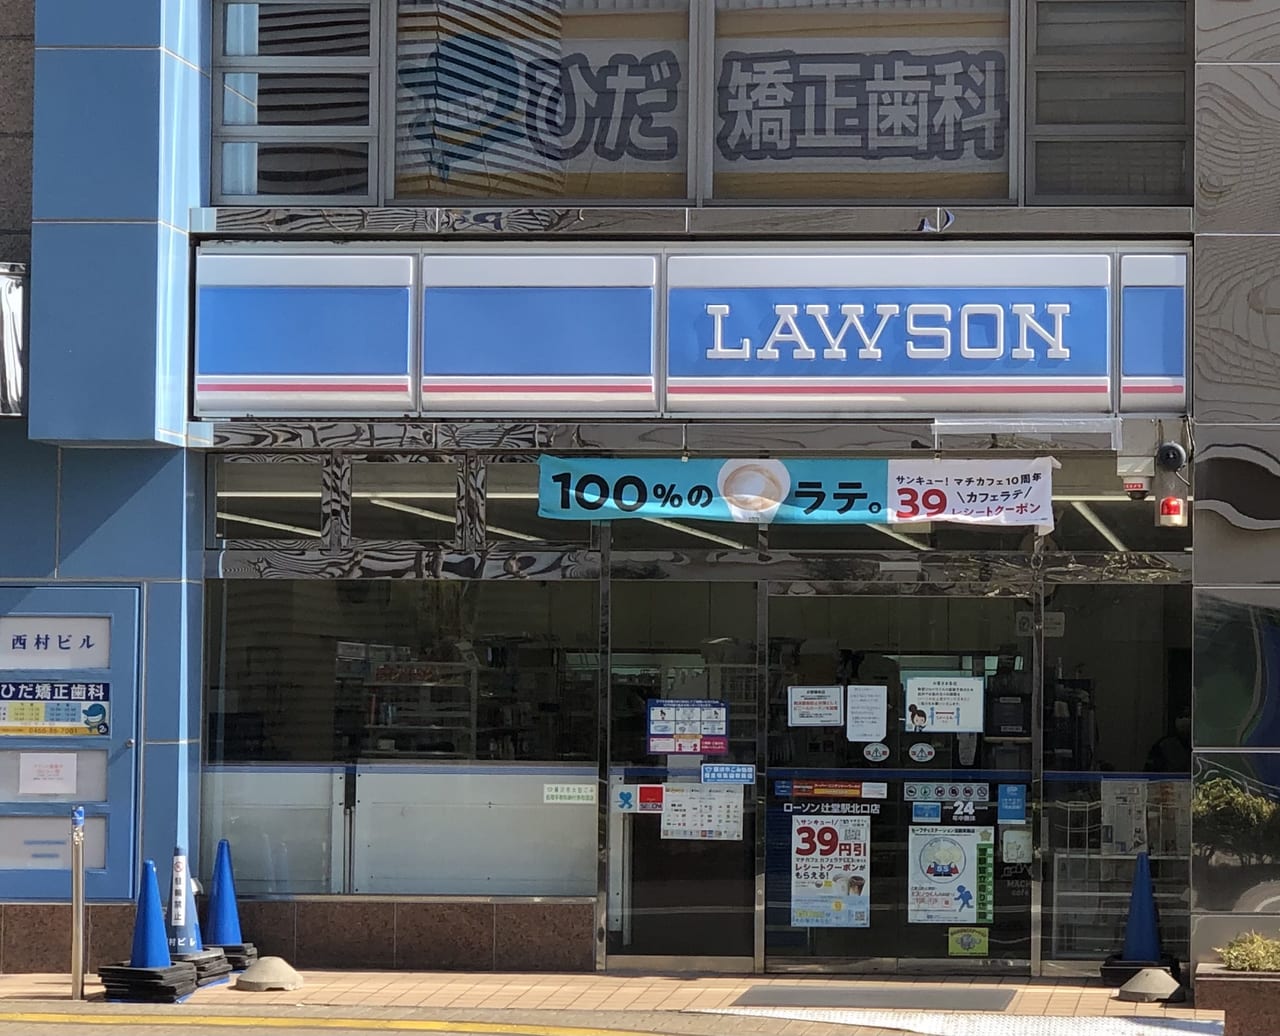 藤沢市 Lawson辻堂駅北口店 が閉店します 営業はいつまで 号外net 藤沢市